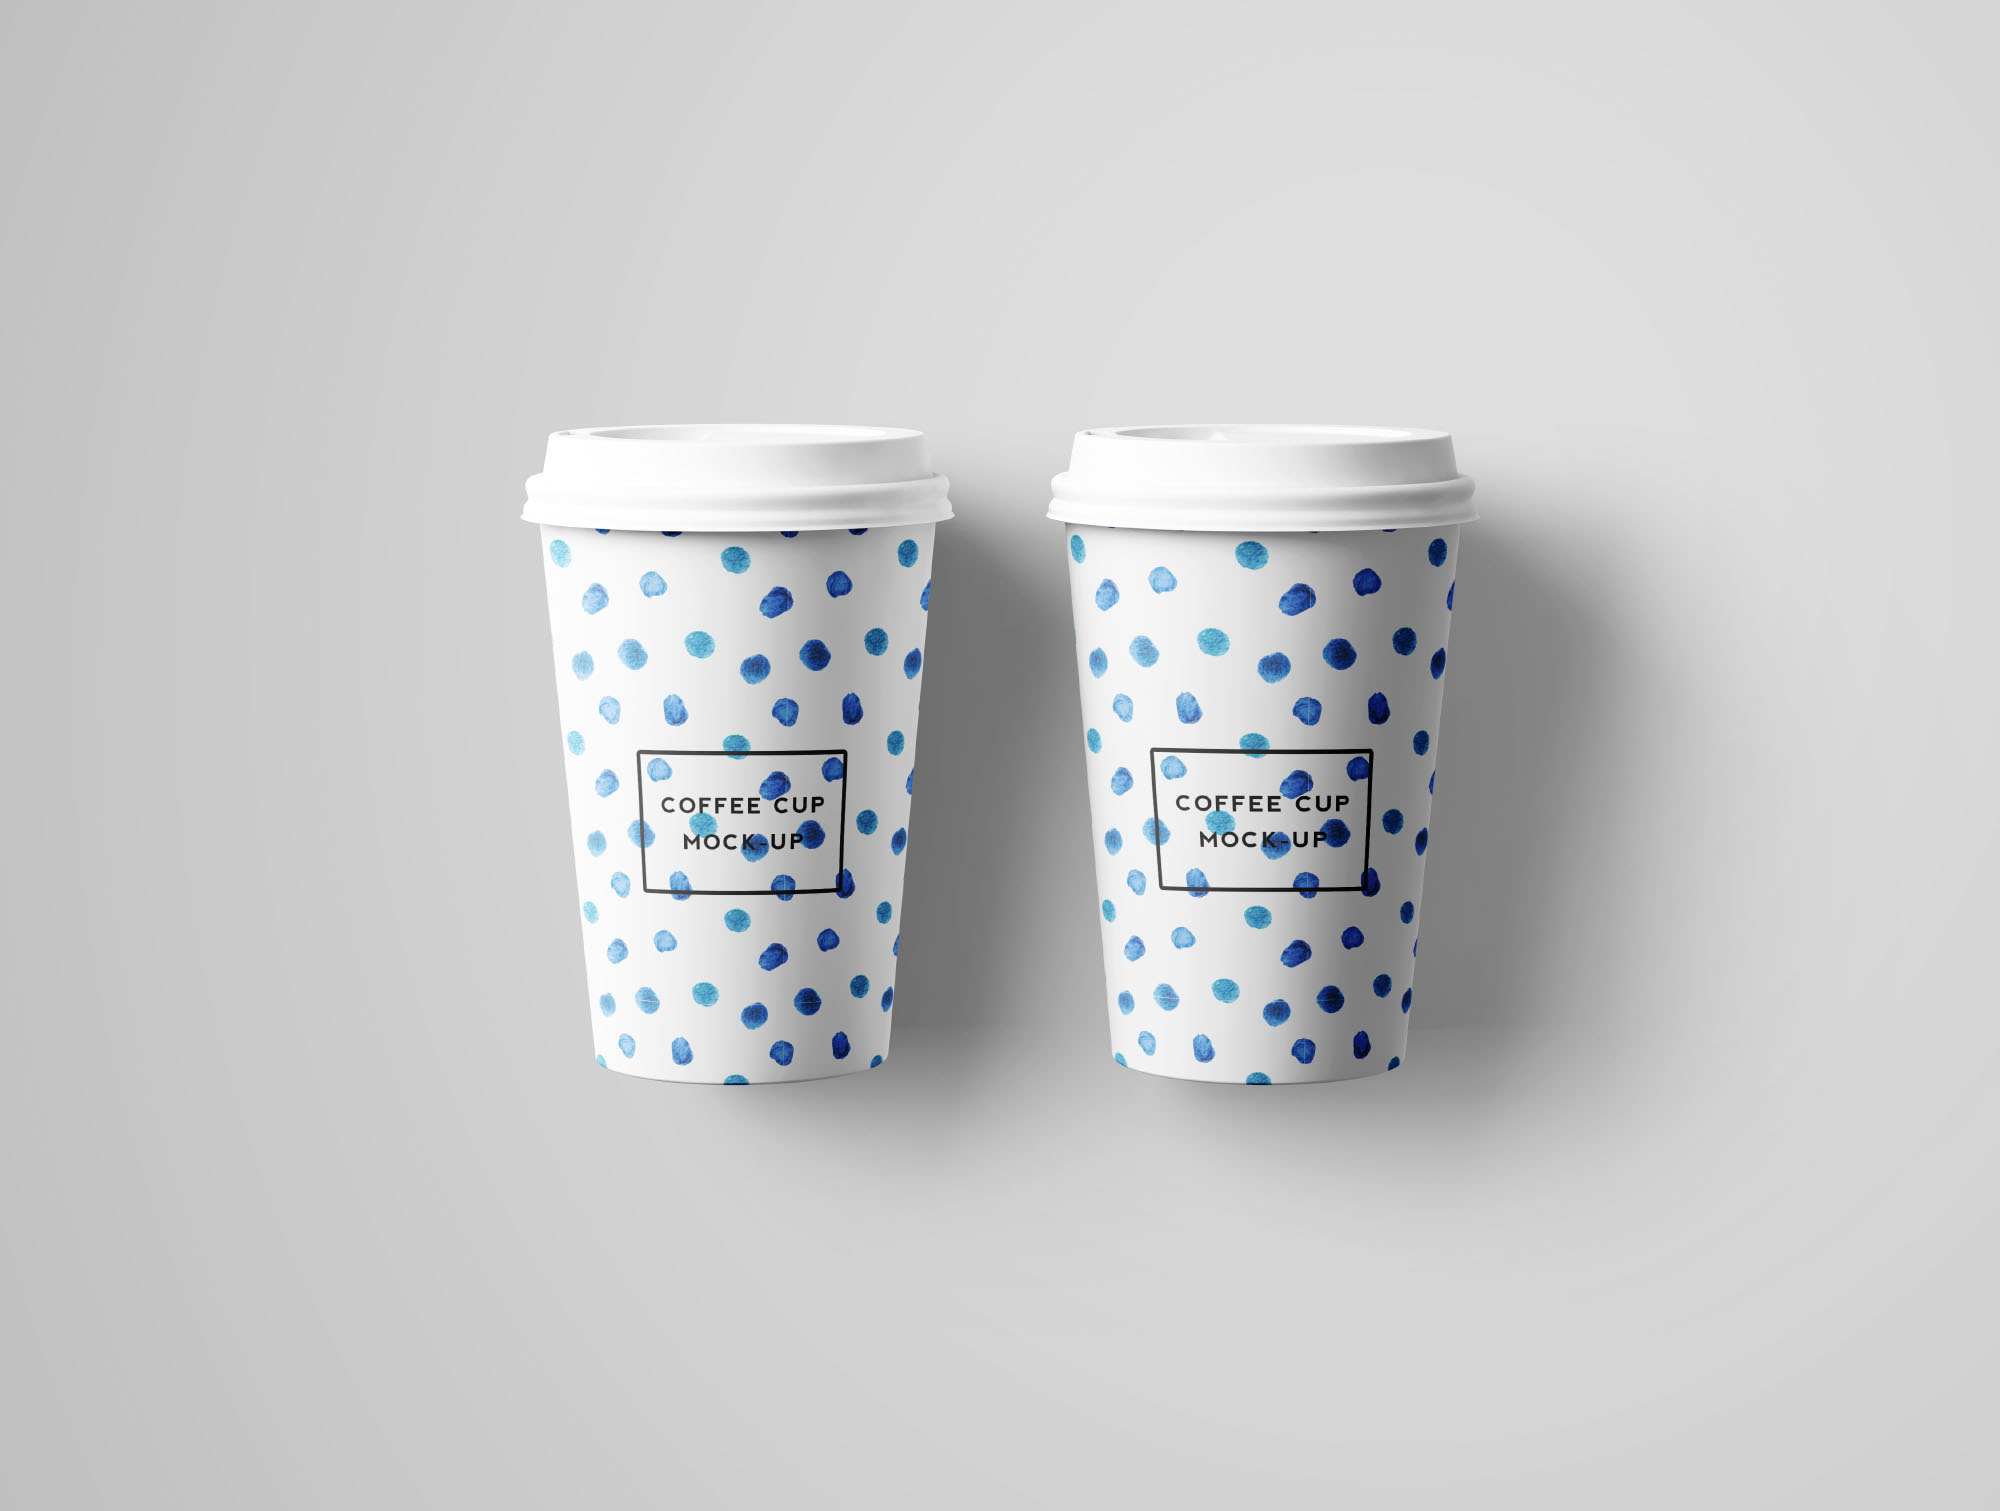 7个咖啡纸杯设计图PSD样机模板 7 PSD Coffee Cup Mockups插图(7)